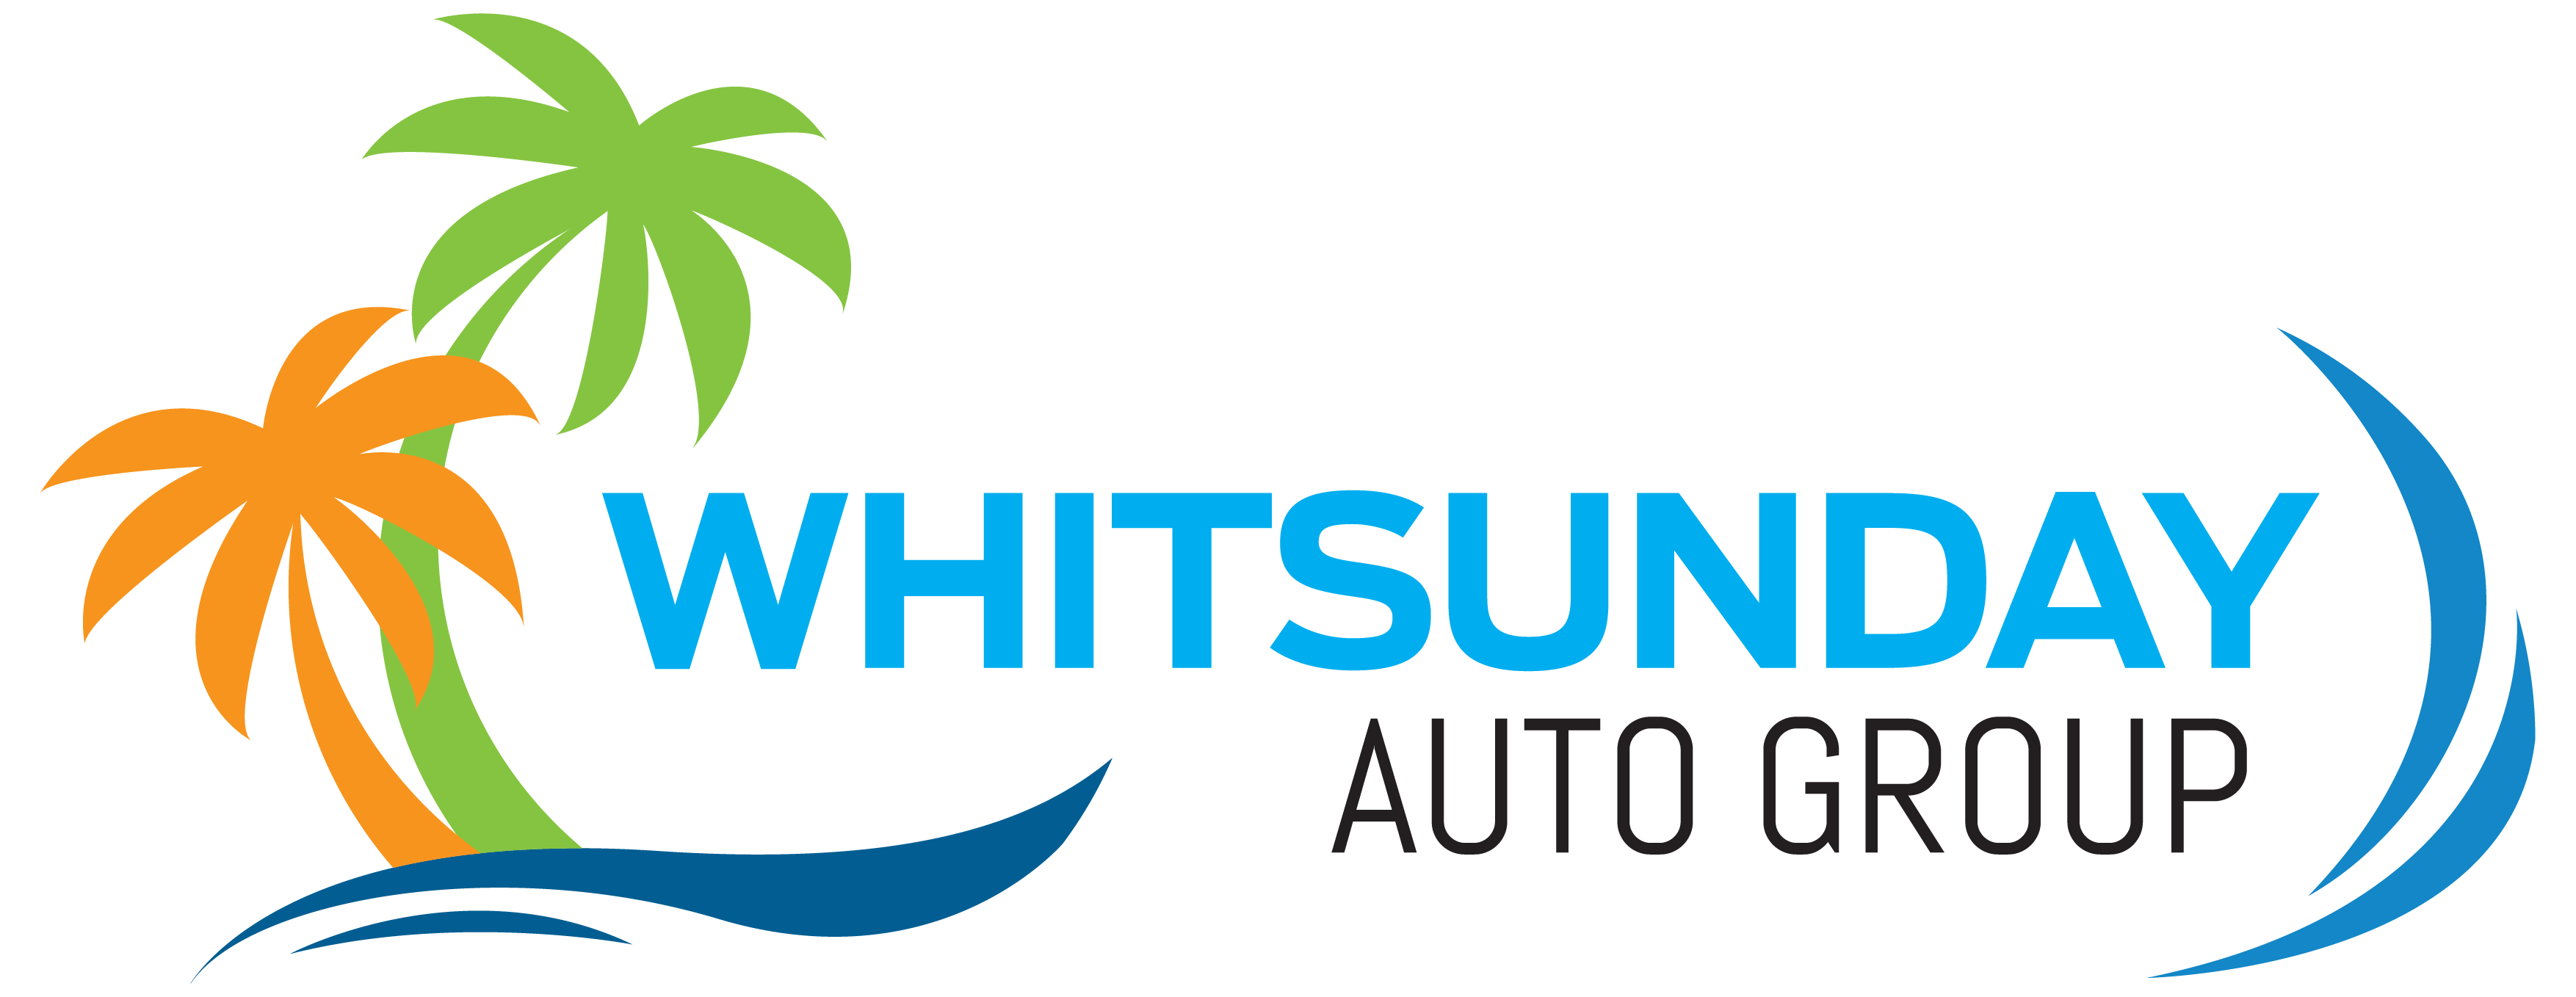 Whitsunday Auto Group logo